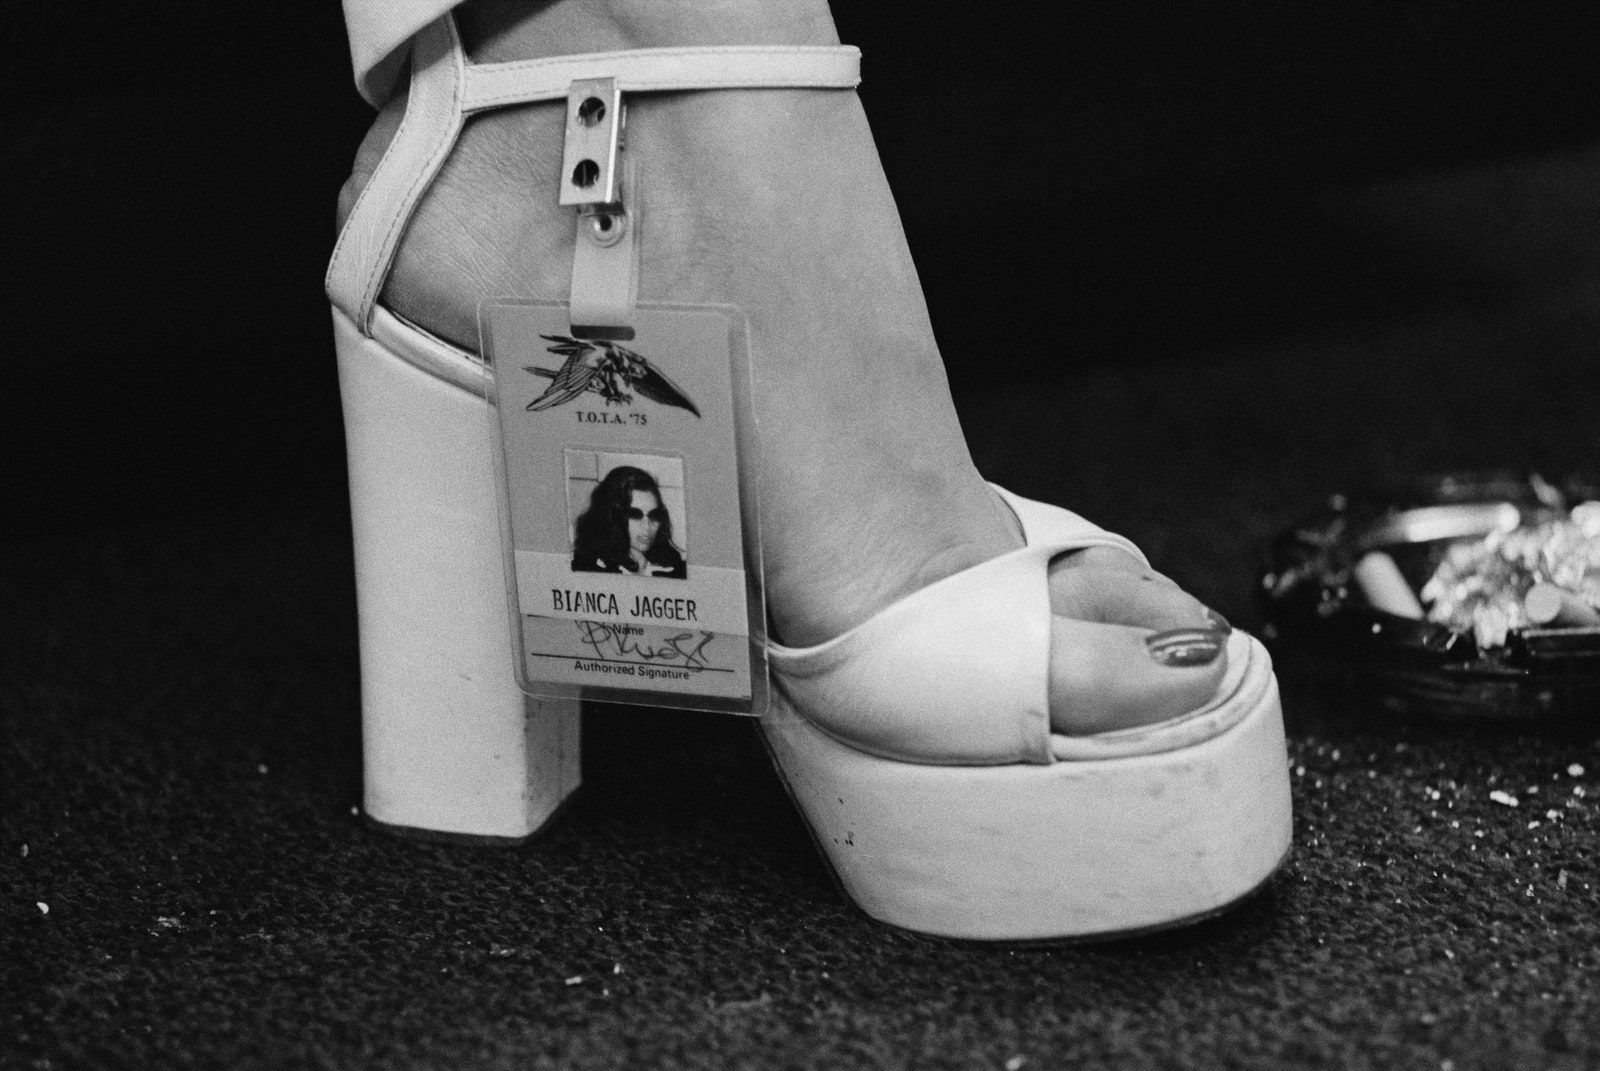 Босоножки Бьянки Джаггер во время тура Rolling Stones по Америке 1975 год.